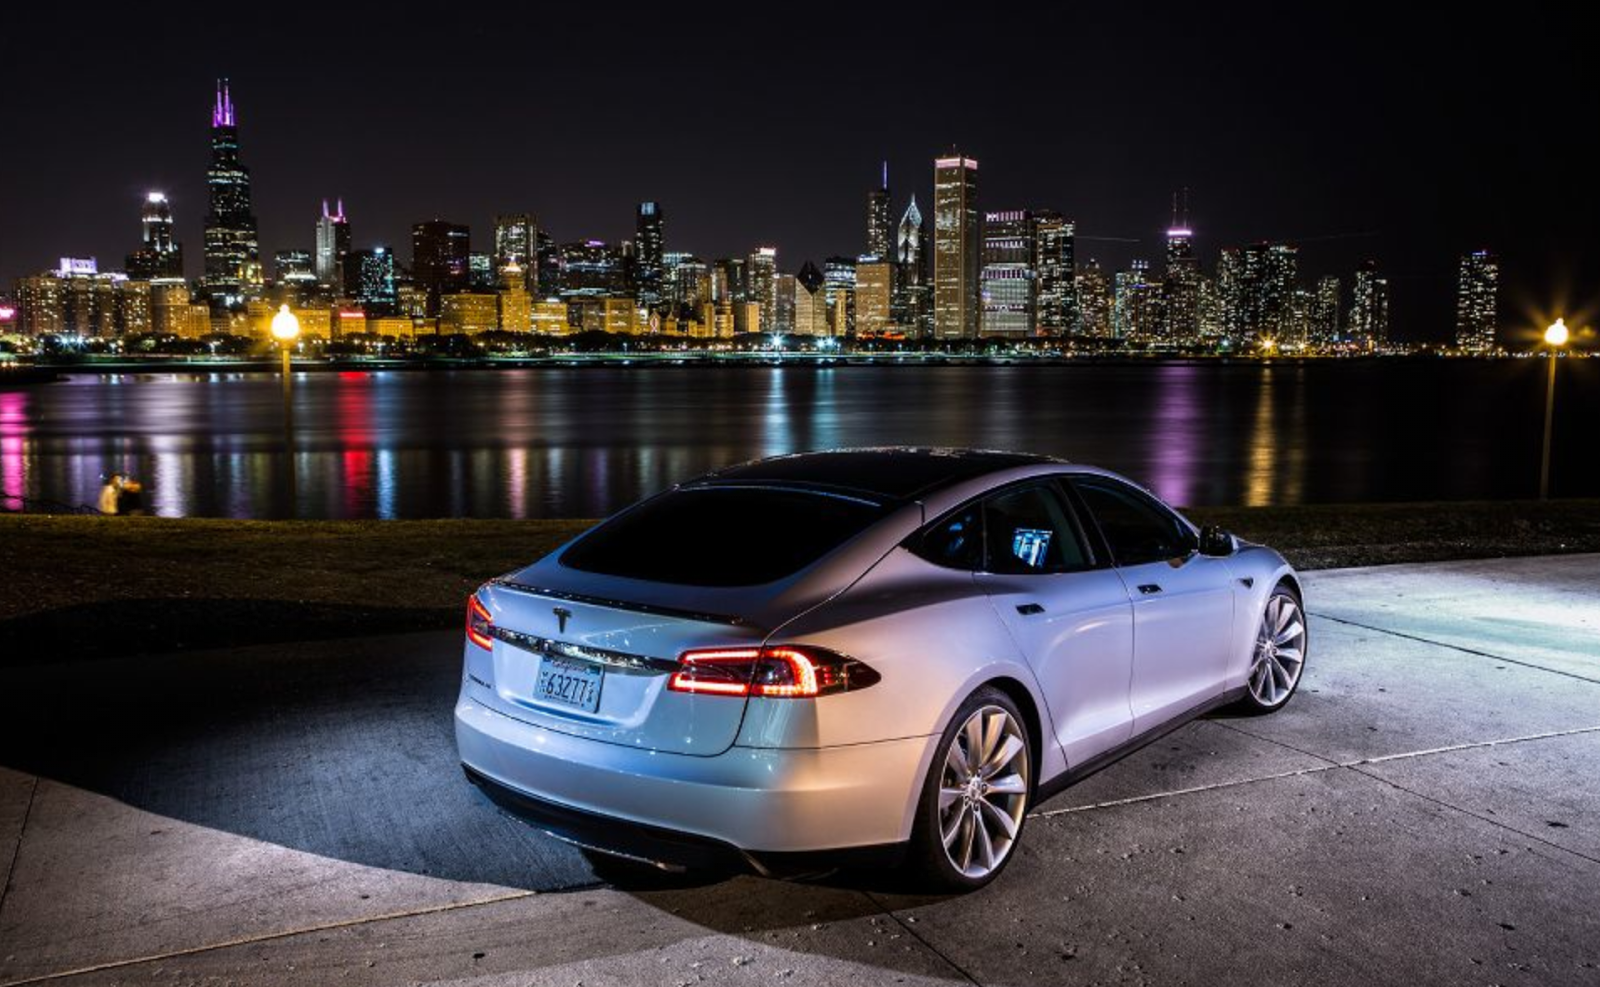 Unatesla Model S, Un'auto Elettrica, Che Guida Attraverso Un Paesaggio Stupendo.